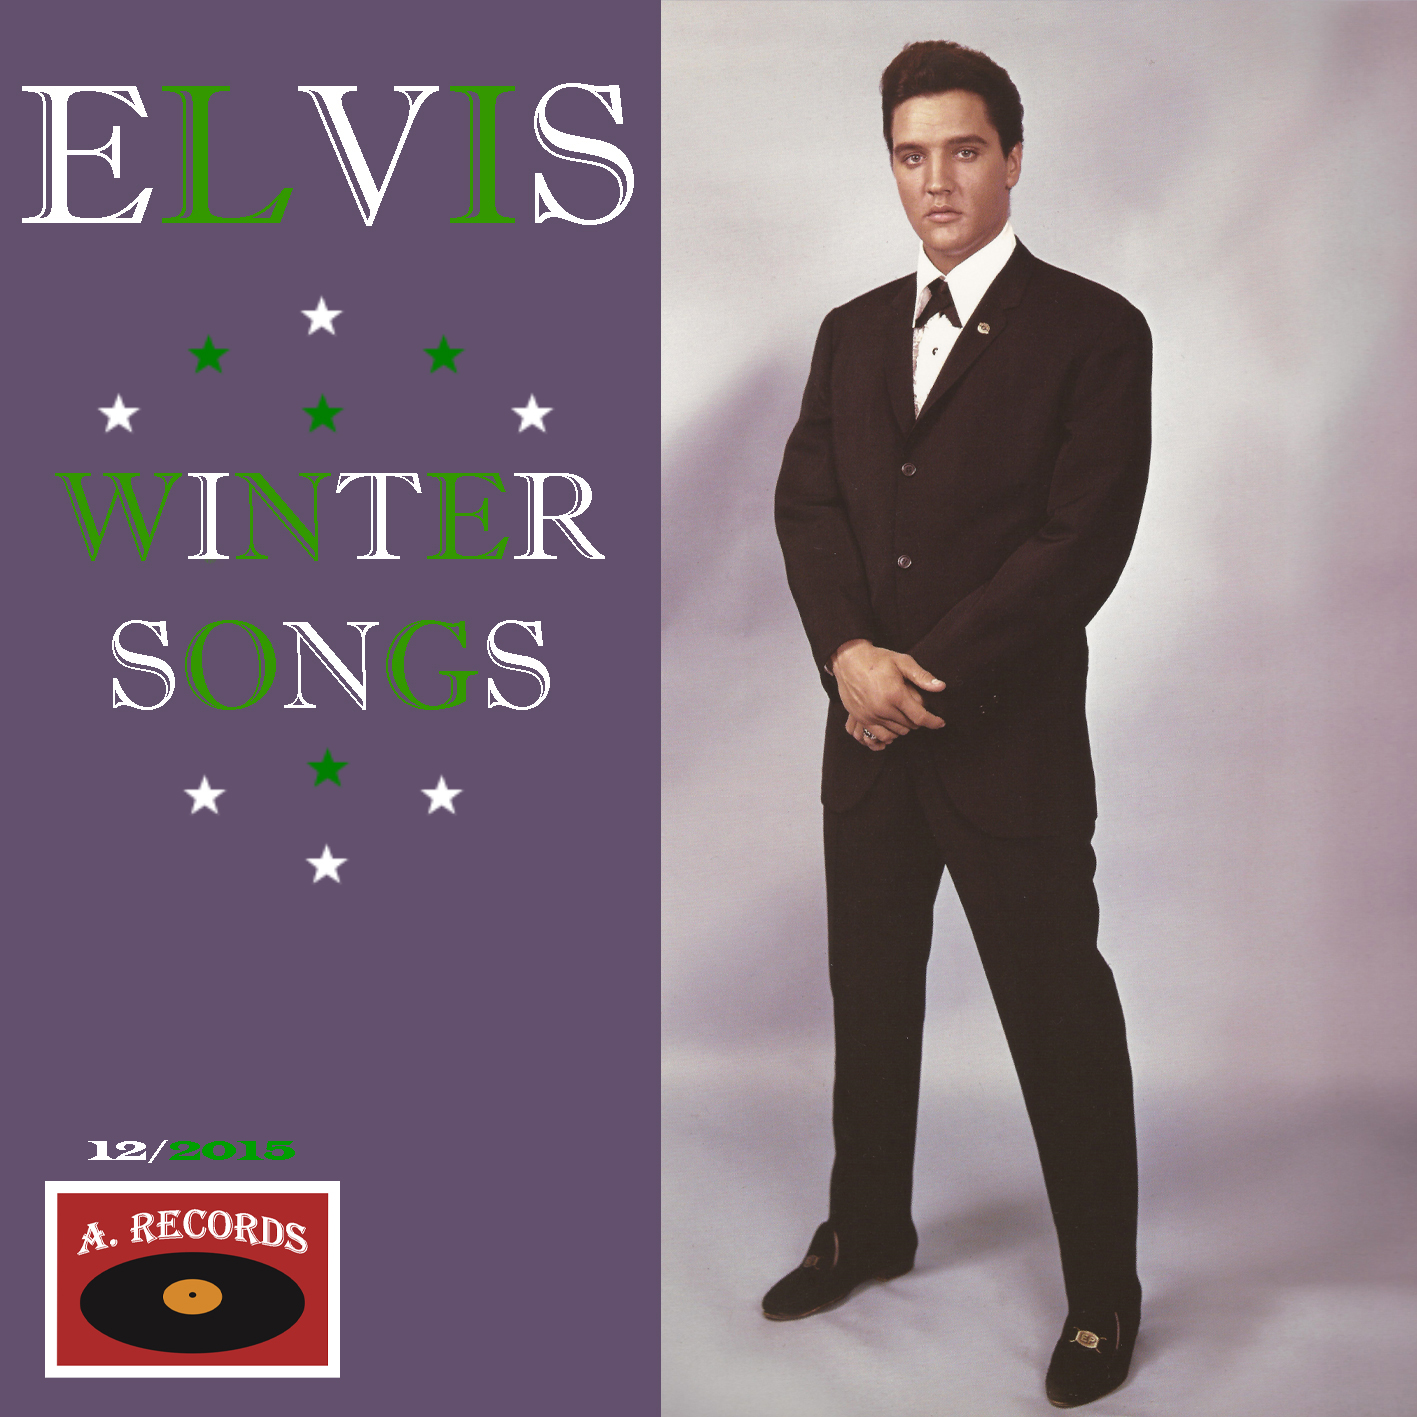 Elvis - Winter Songs (December 2015)